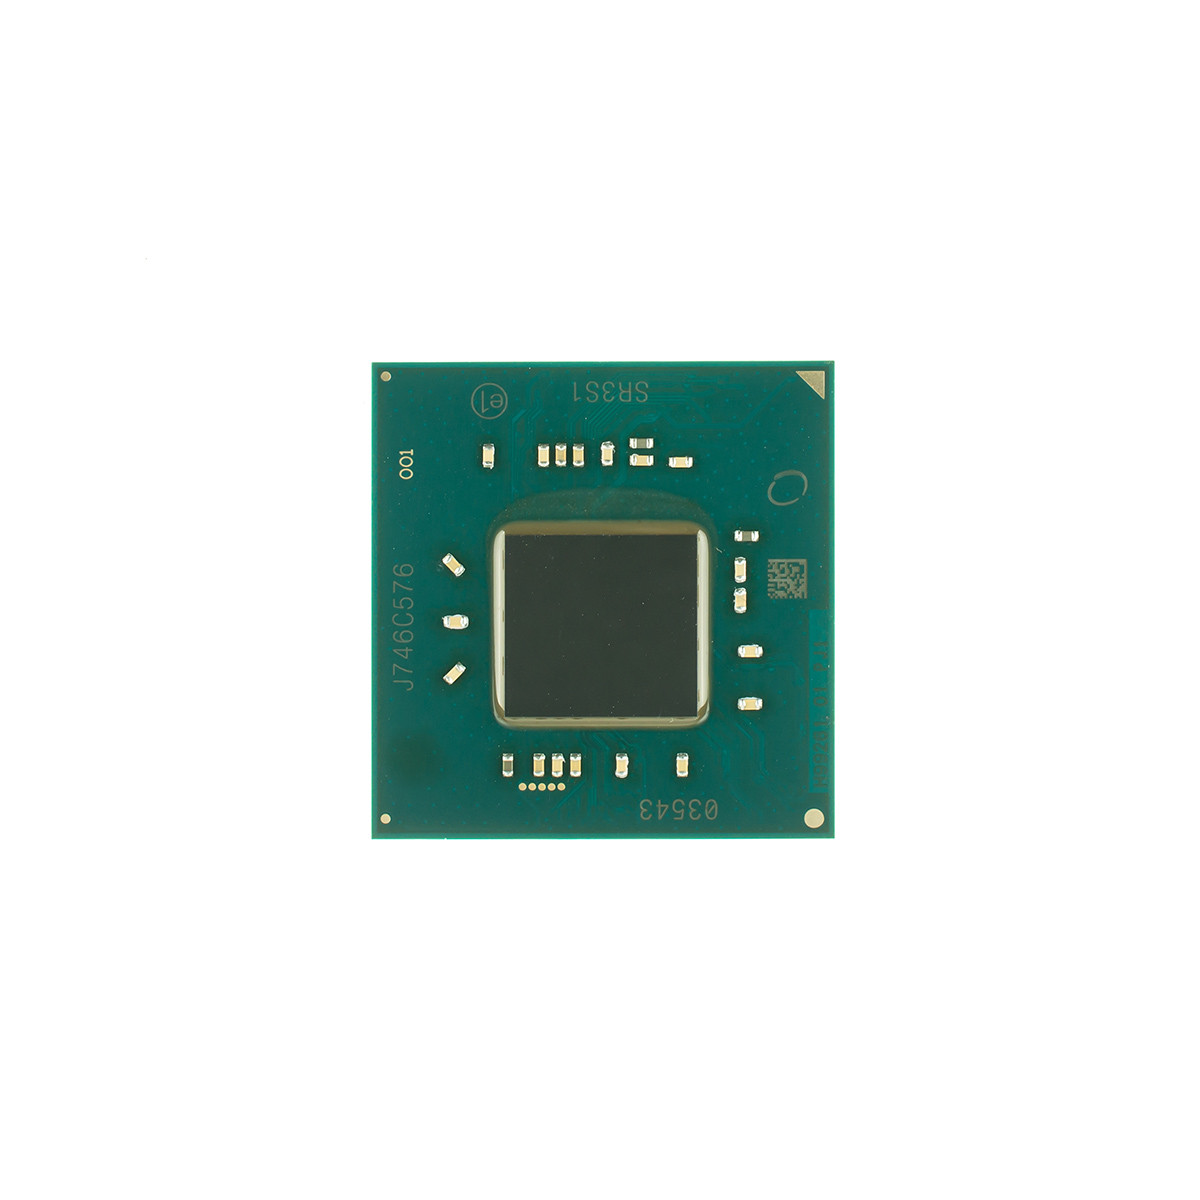 УЦЕНКА! БЕЗ ШАРИКОВ! Процессор INTEL Celeron N4000 (Gemini Lake, Dual Core,  1.1-2.6Ghz, 4Mb L2, TDP 6W, — Купить Недорого на Bigl.ua (1818926618)